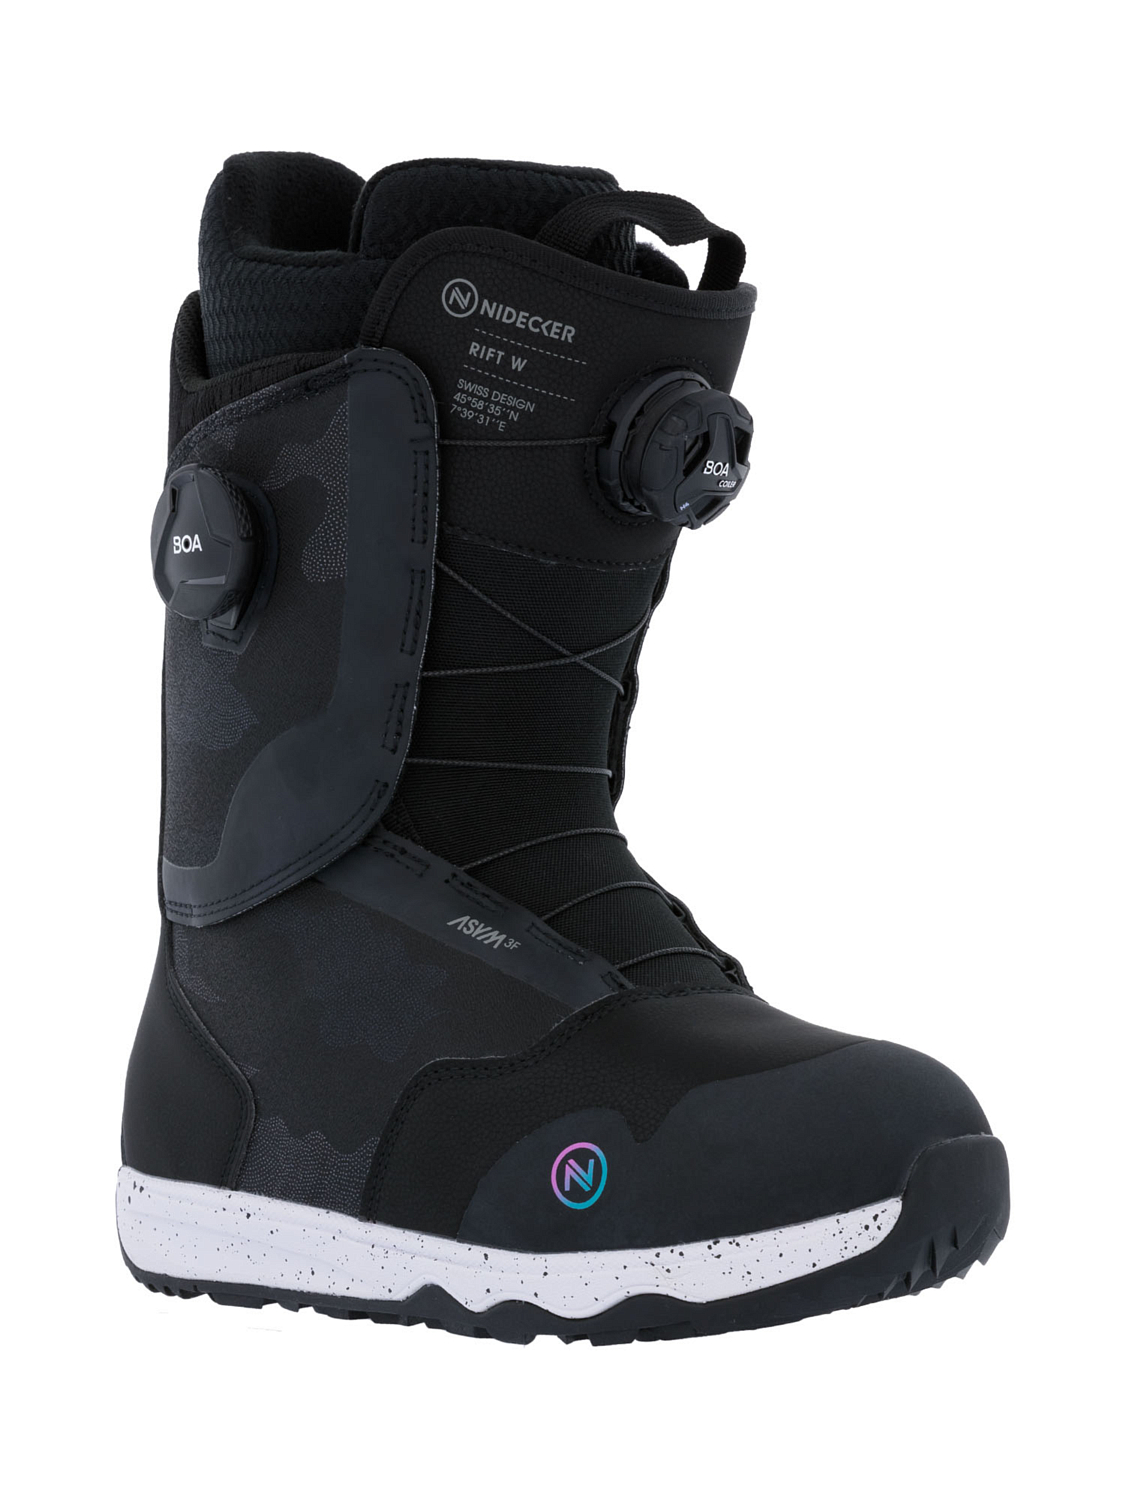 Ботинки для сноуборда NIDECKER Rift W Black